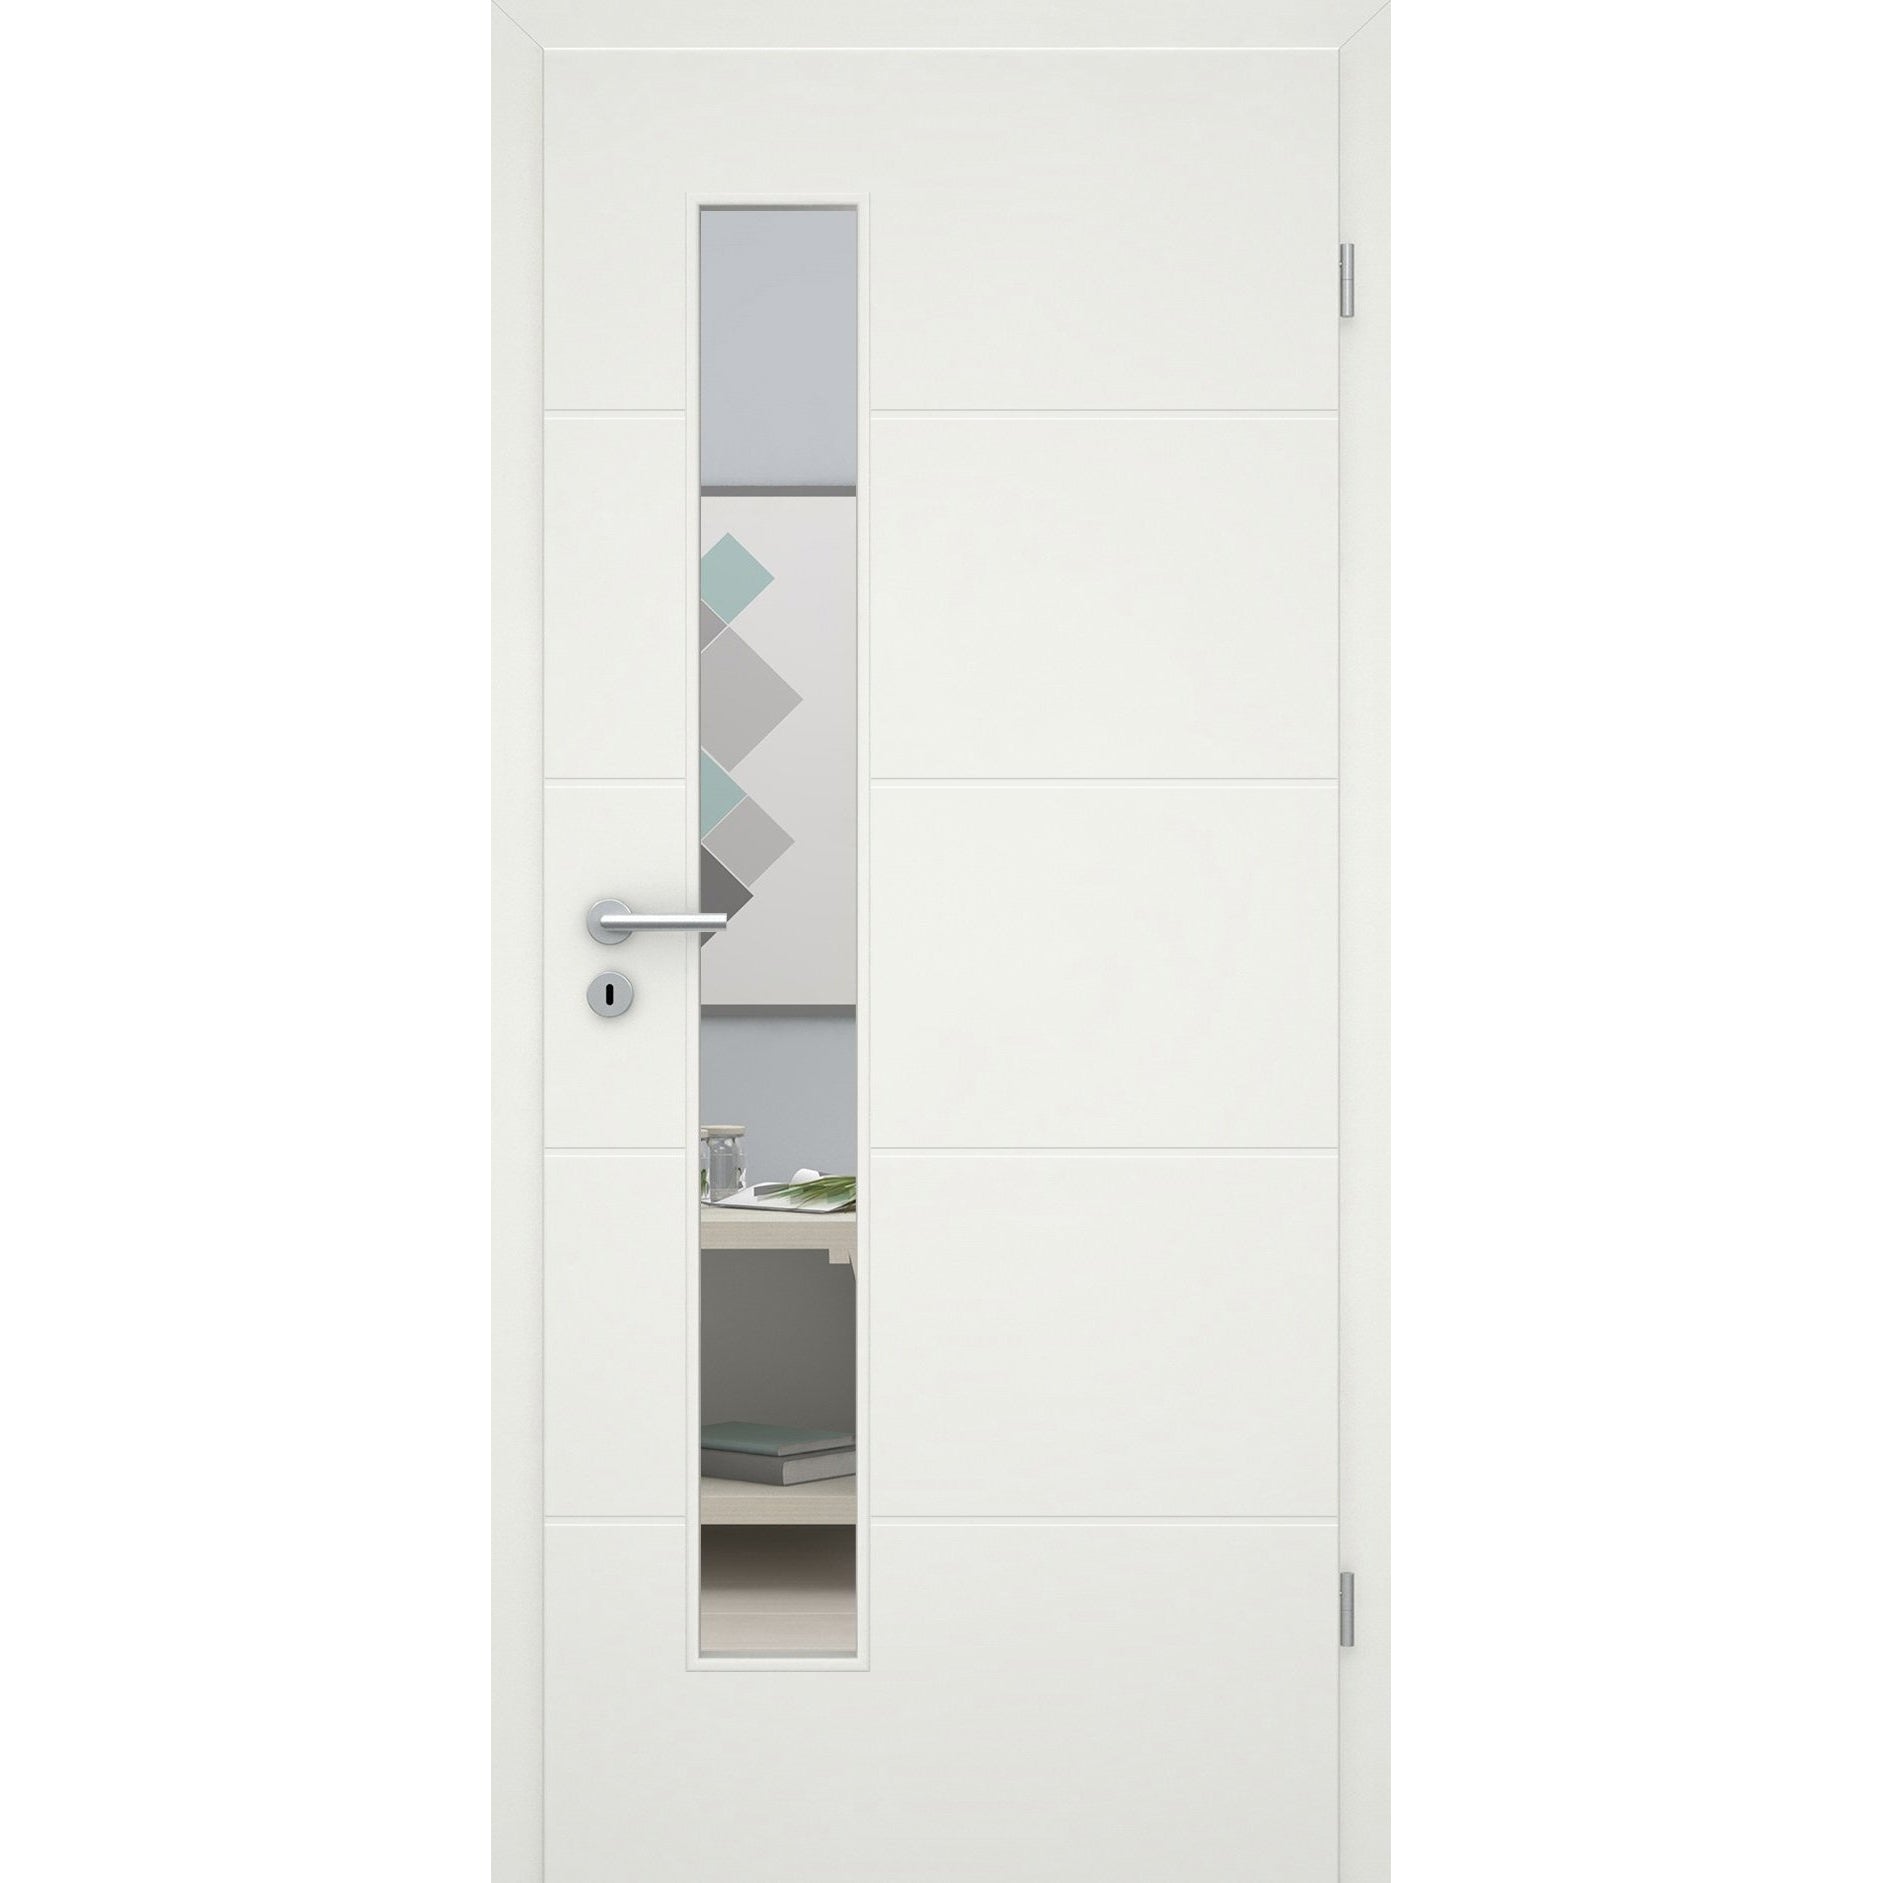 Zimmertür mit Lichtausschnittsoft-weiß 4 Rillen Eckkante - Modell Designtür Q41LAS